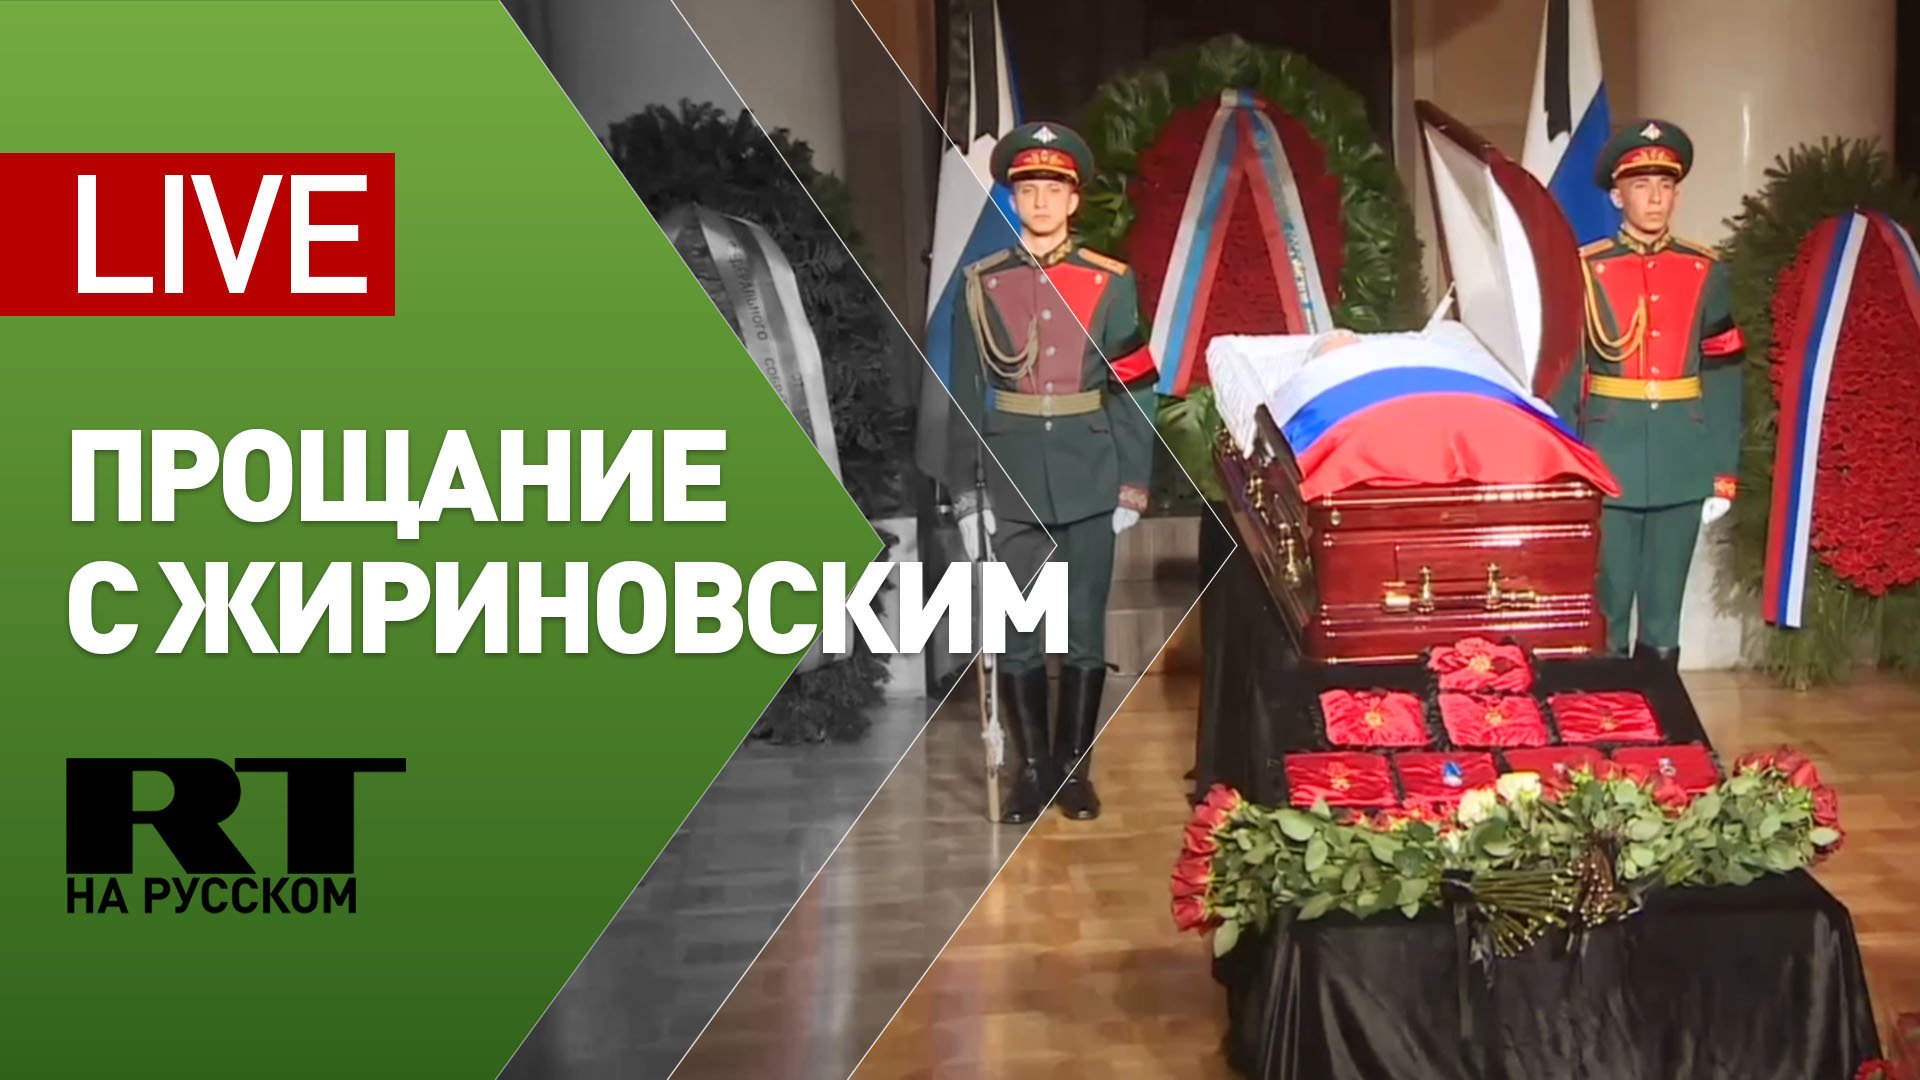 Церемония прощания с Жириновским — LIVE